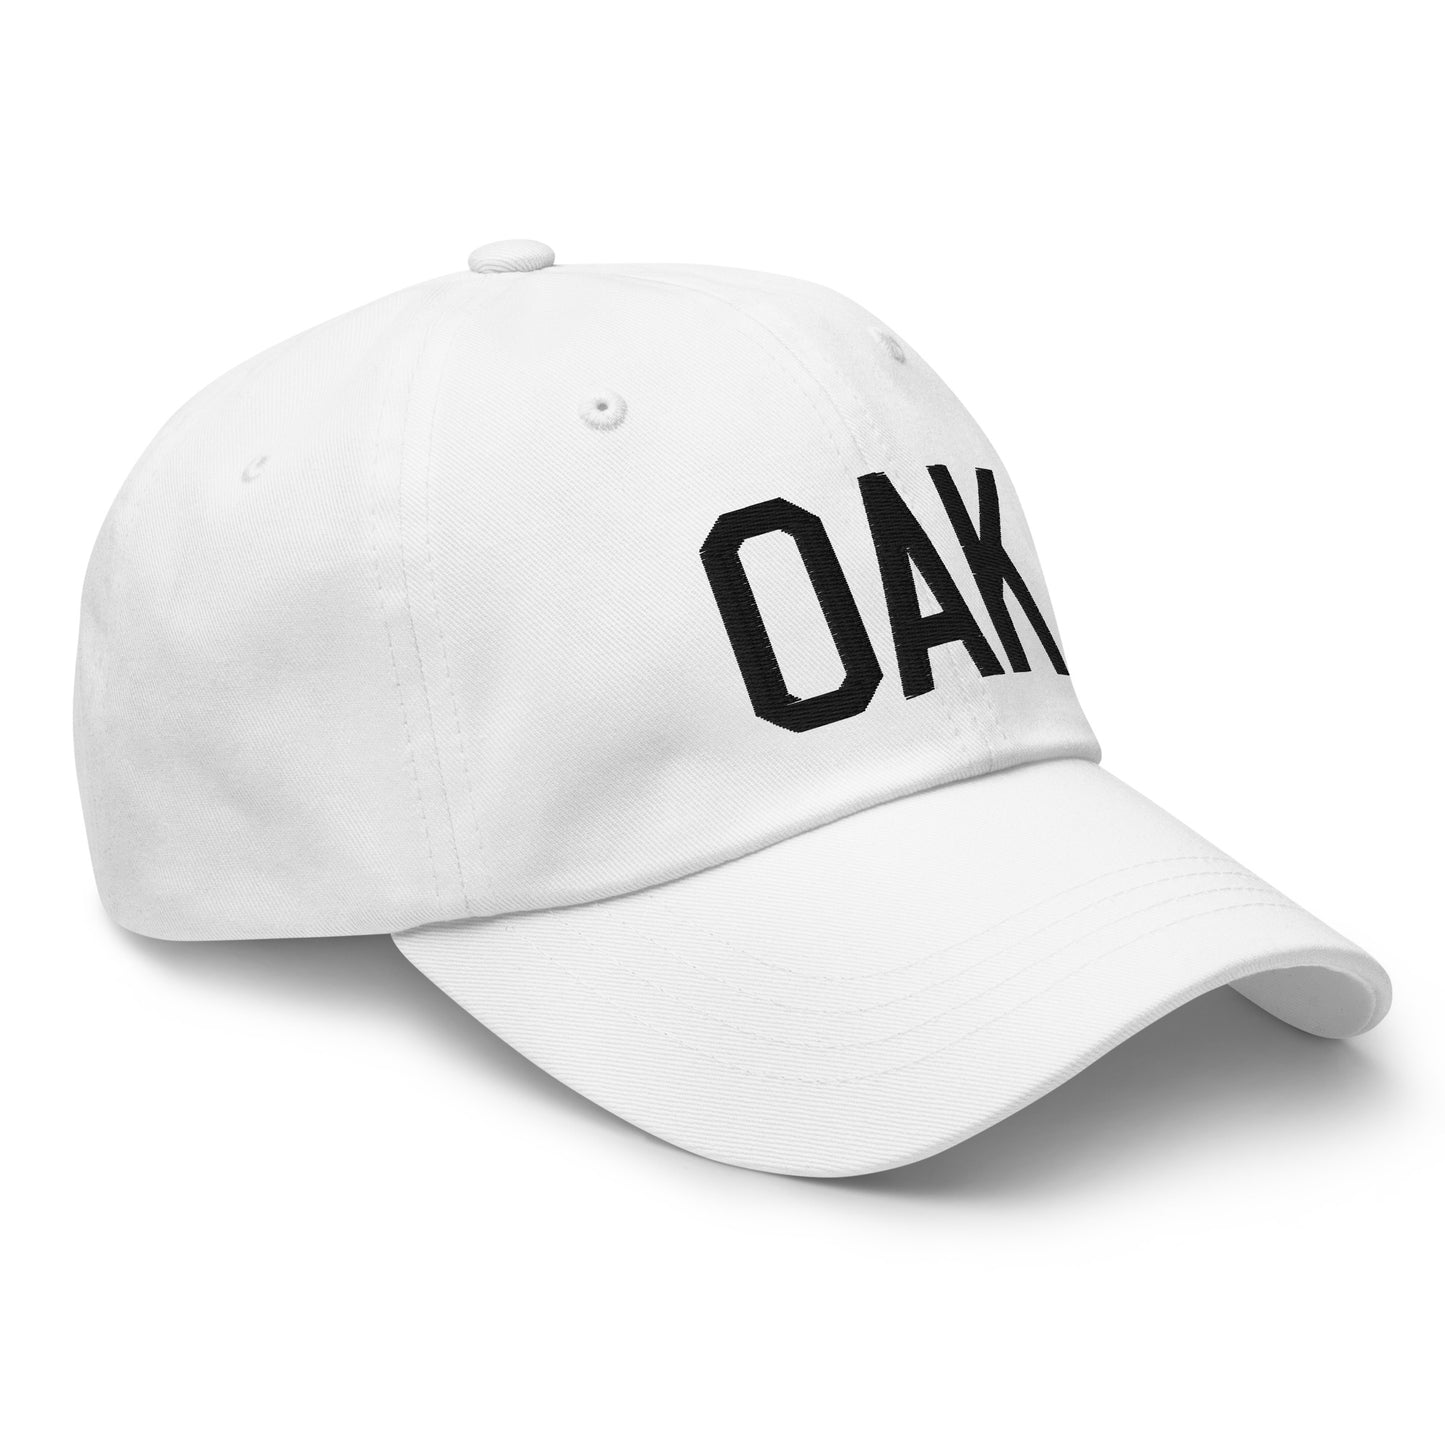 Airport Code Baseball Cap - Black • OAK Oakland • YHM Designs - Image 19